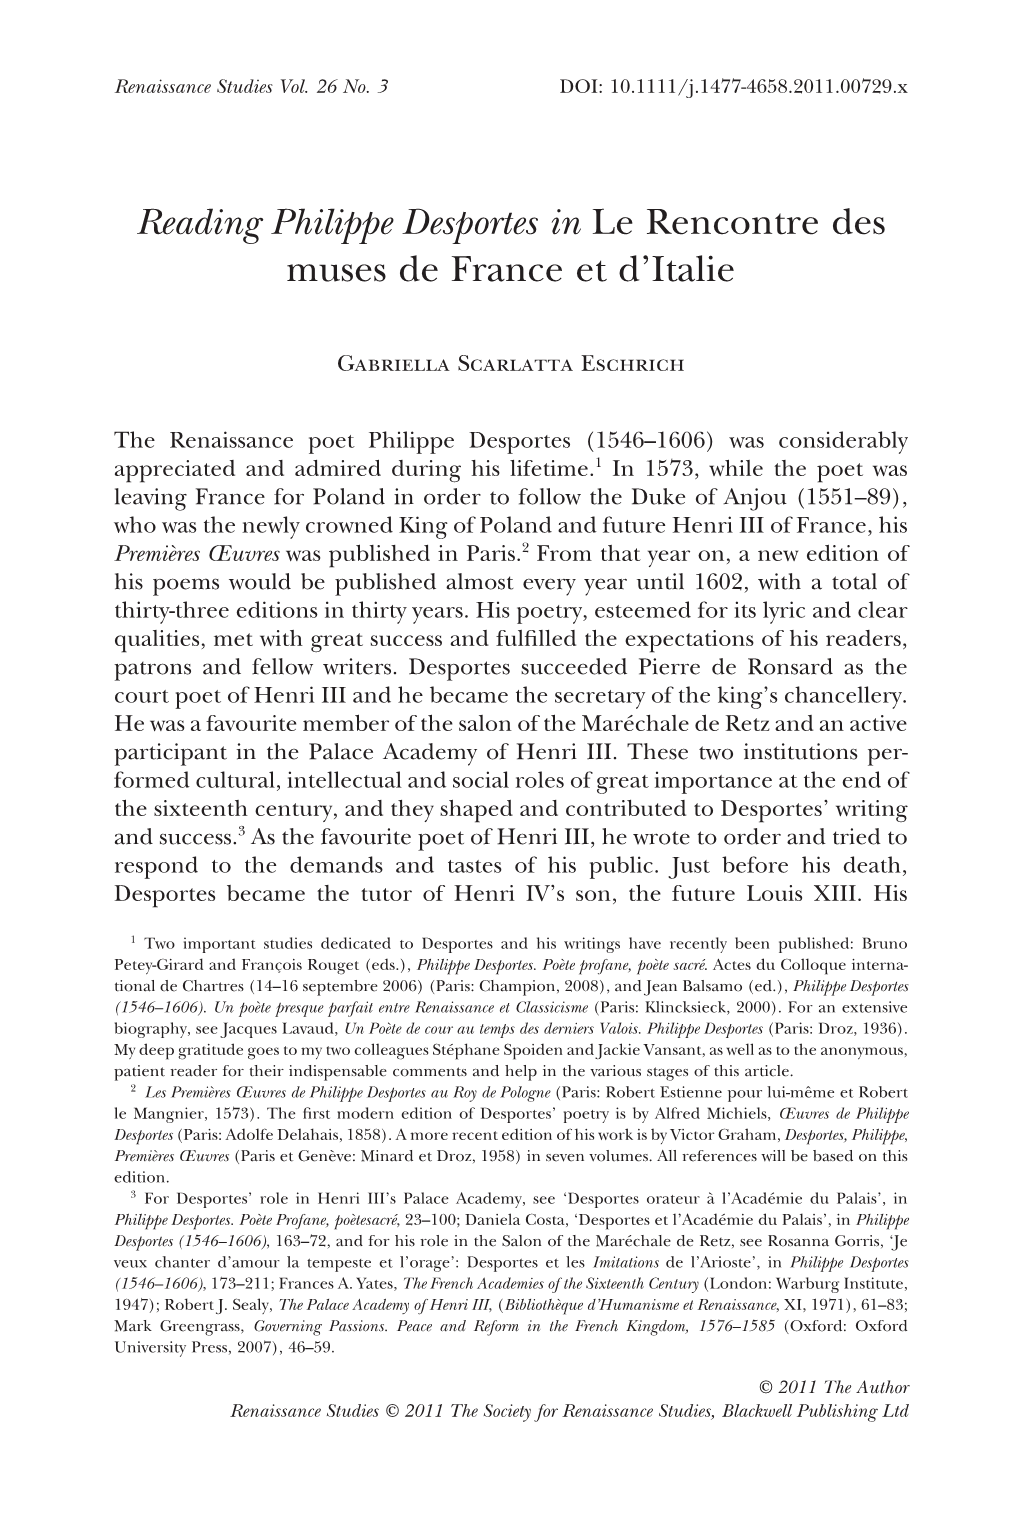 Reading Philippe Desportes in Le Rencontre Des Muses De France Et D’Italie